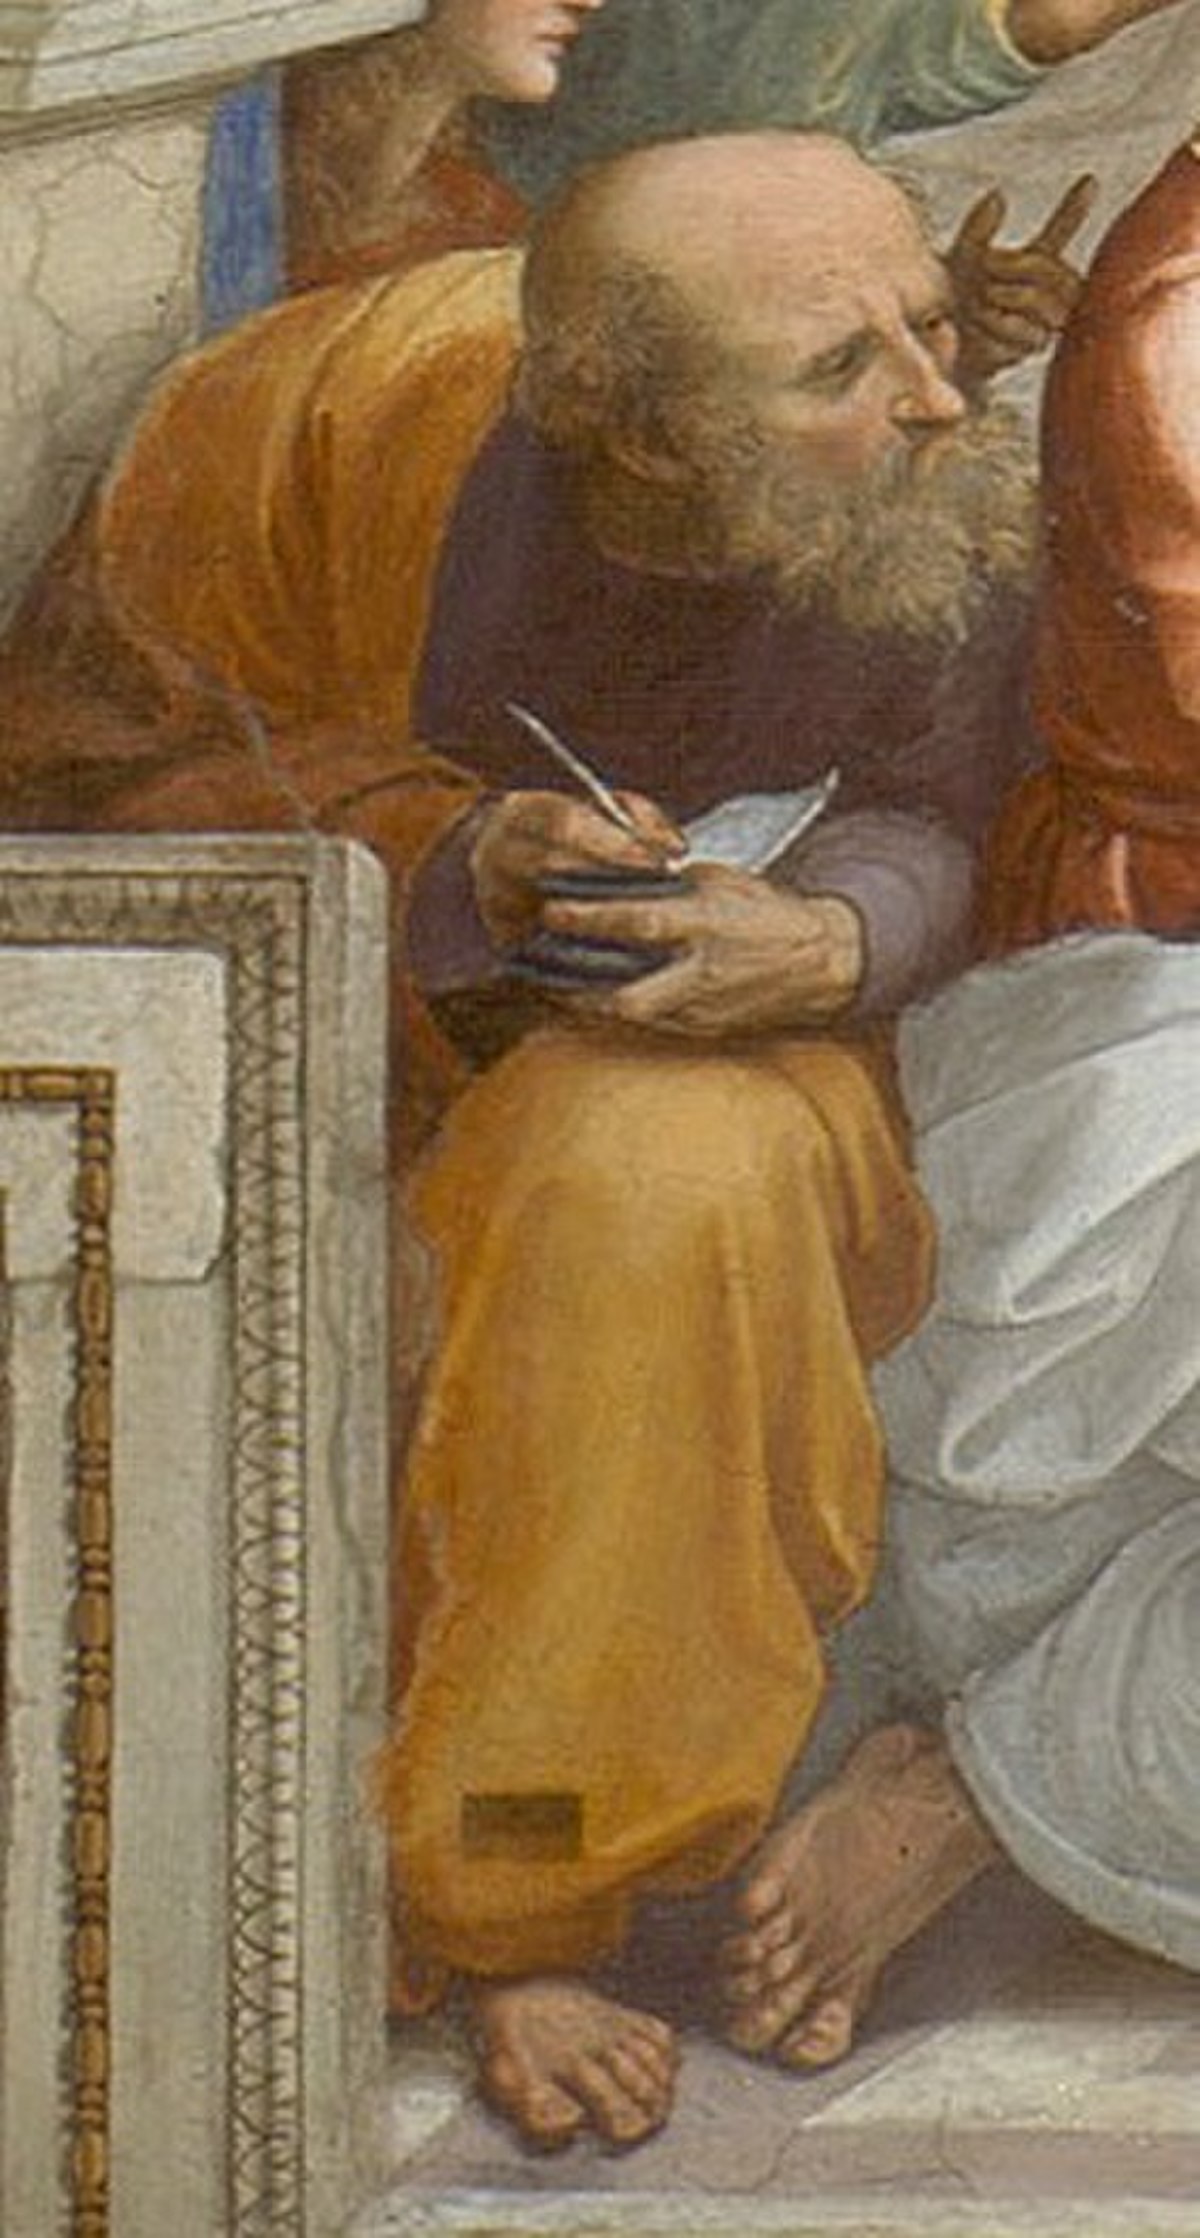 Détail de l'École d'Athènes de Raphaël, 1510-1511. Penché vers Pythagore à sa gauche, ce personnage est traditionnellement identifié à Boèce, cependant le visage présente des similitudes avec un buste d’Anaximandre et pourrait être une représentation du philosophe[1]